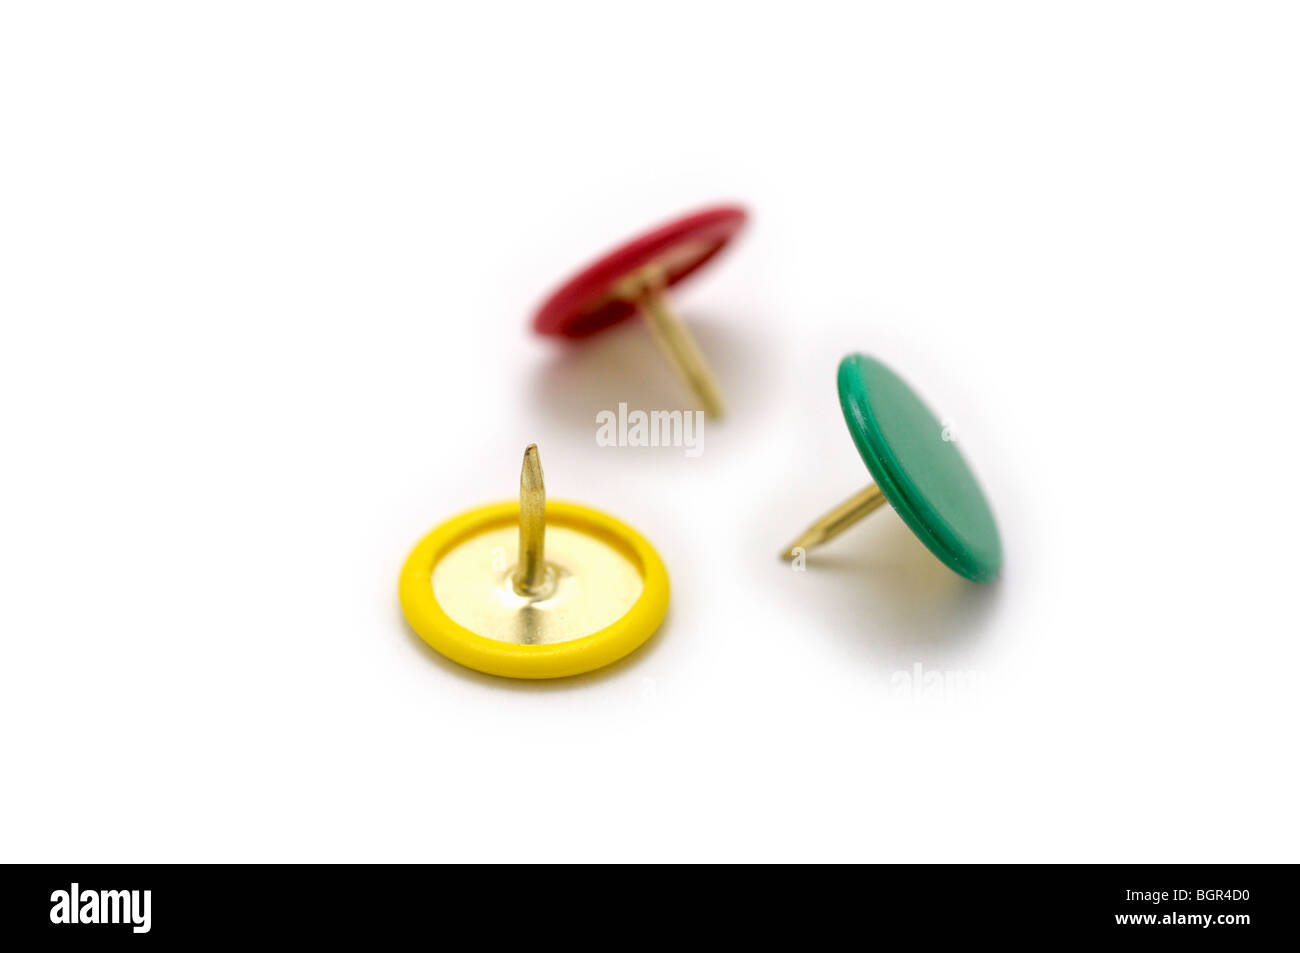 Thumb Tacks/ Push Pins Stock Photo